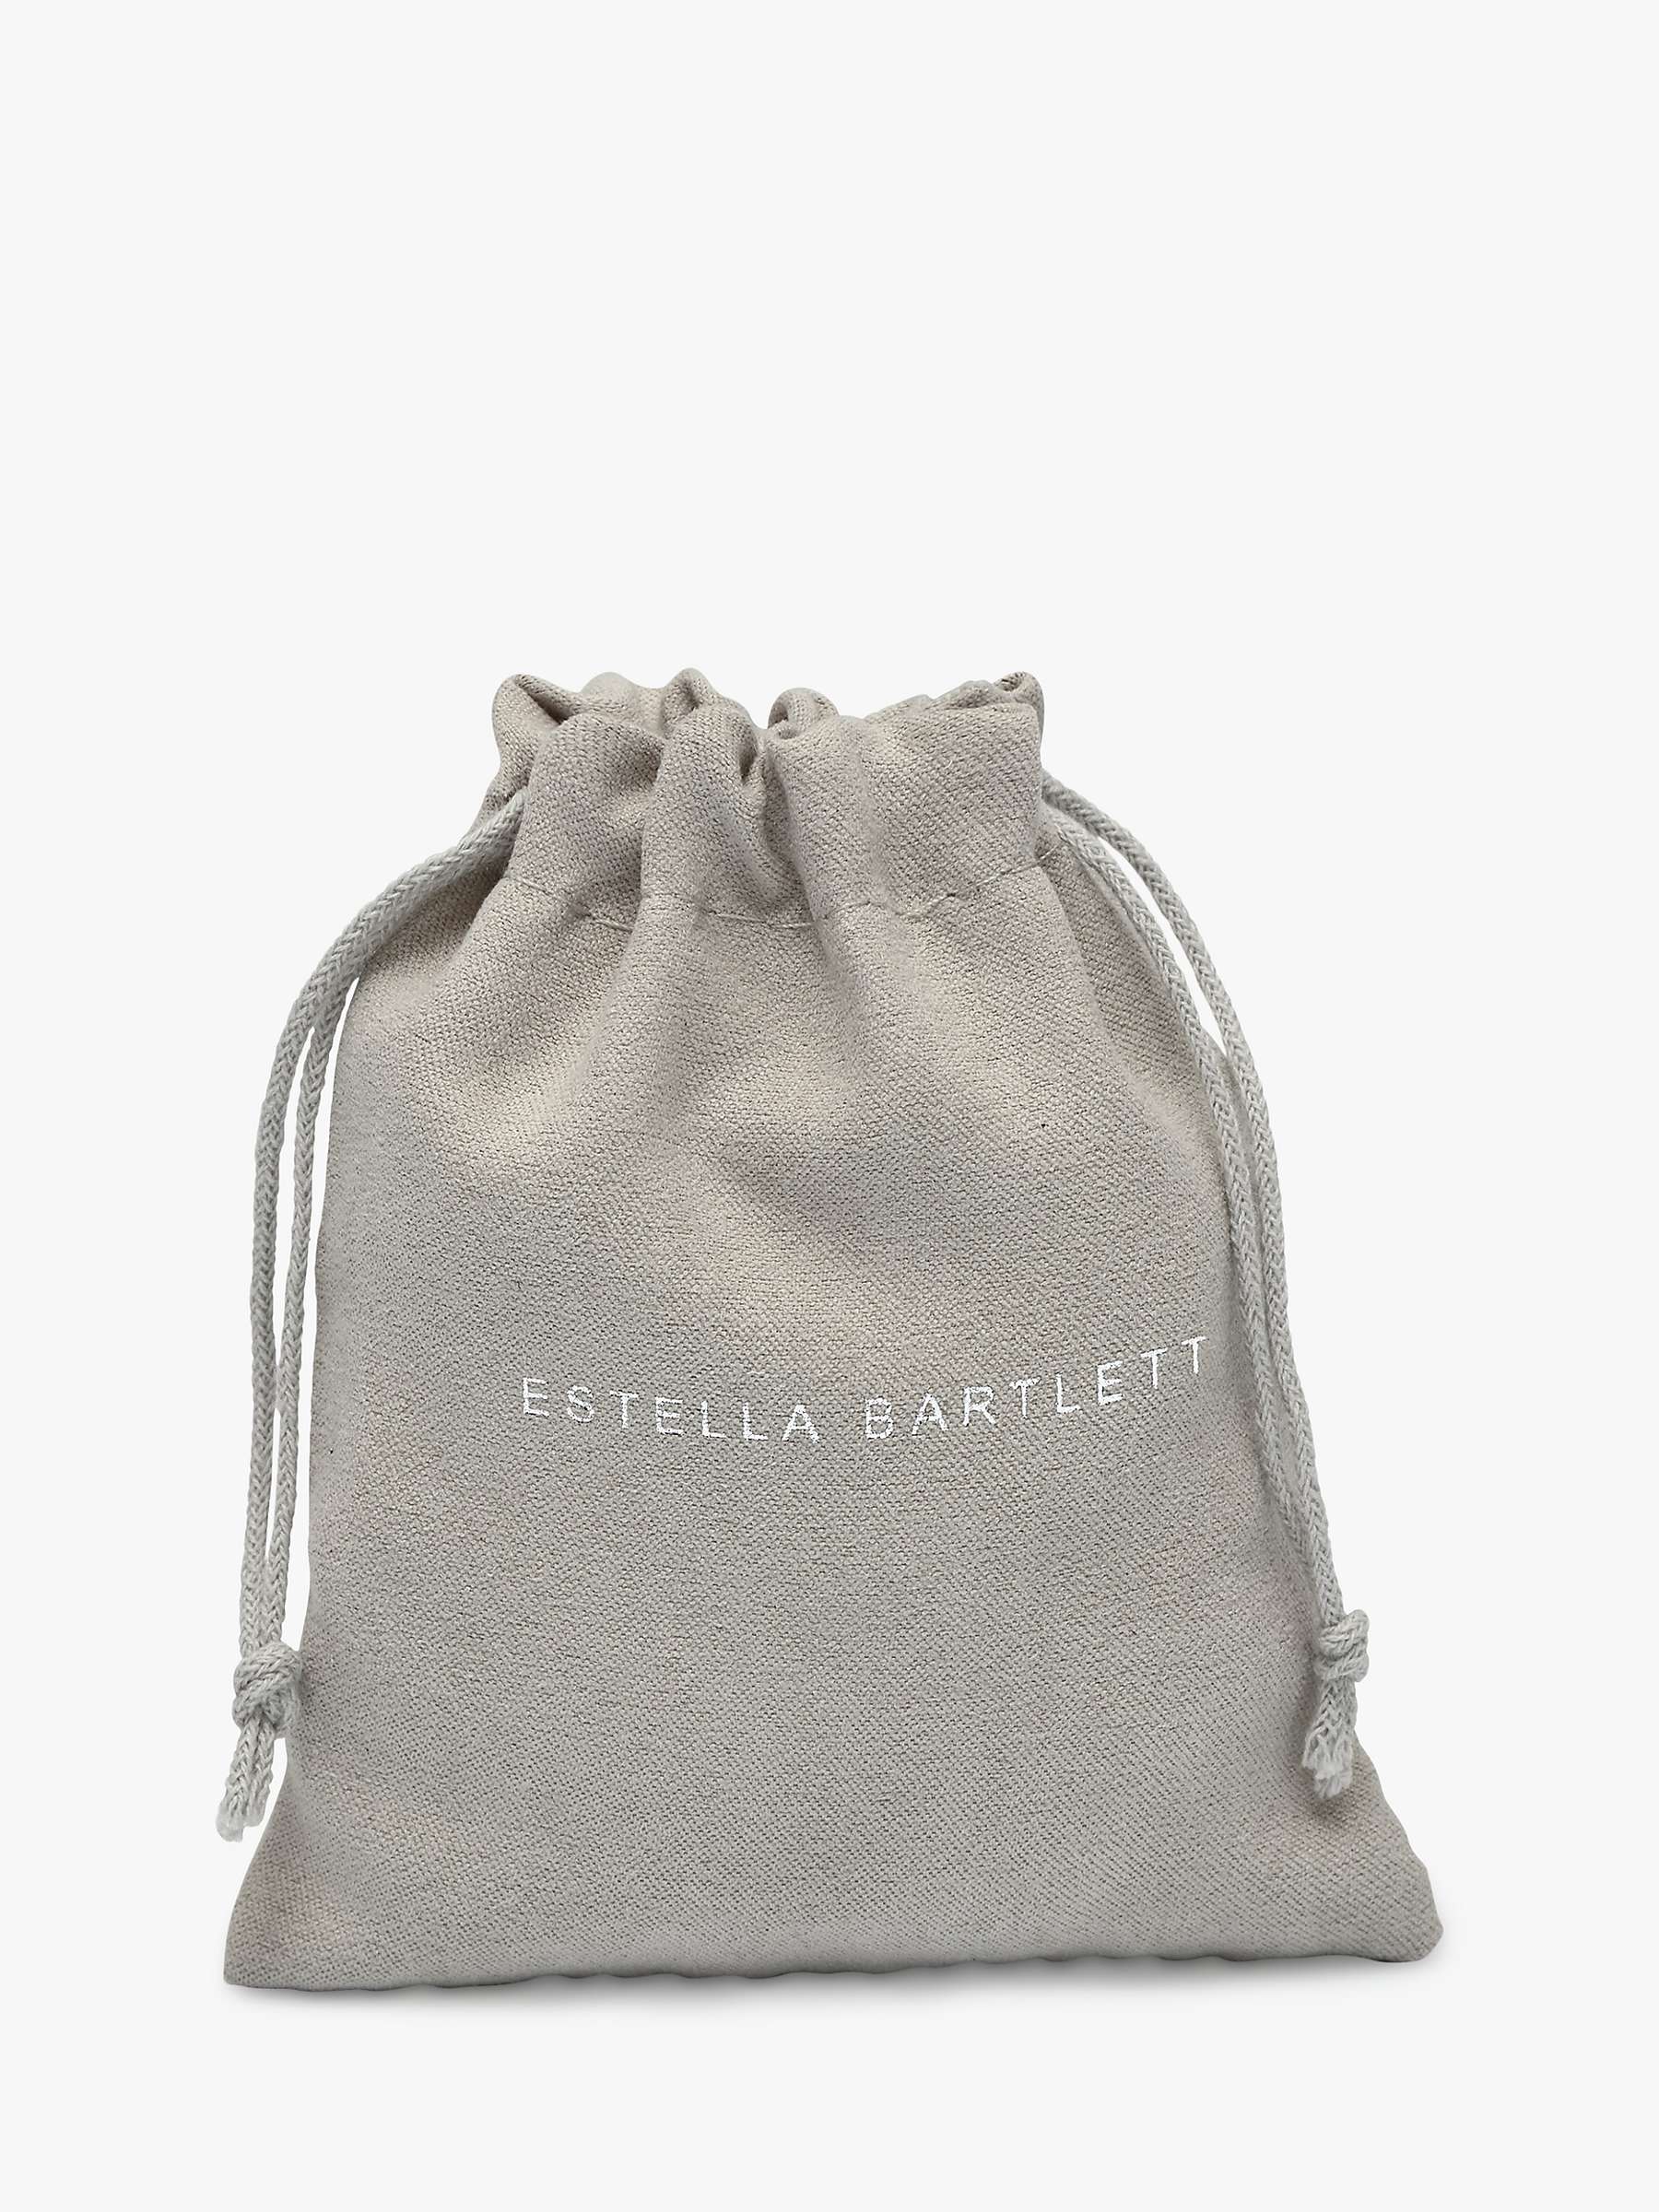 Buy Estella Bartlett Square Link T-Bar Bracelet, Gold Online at johnlewis.com